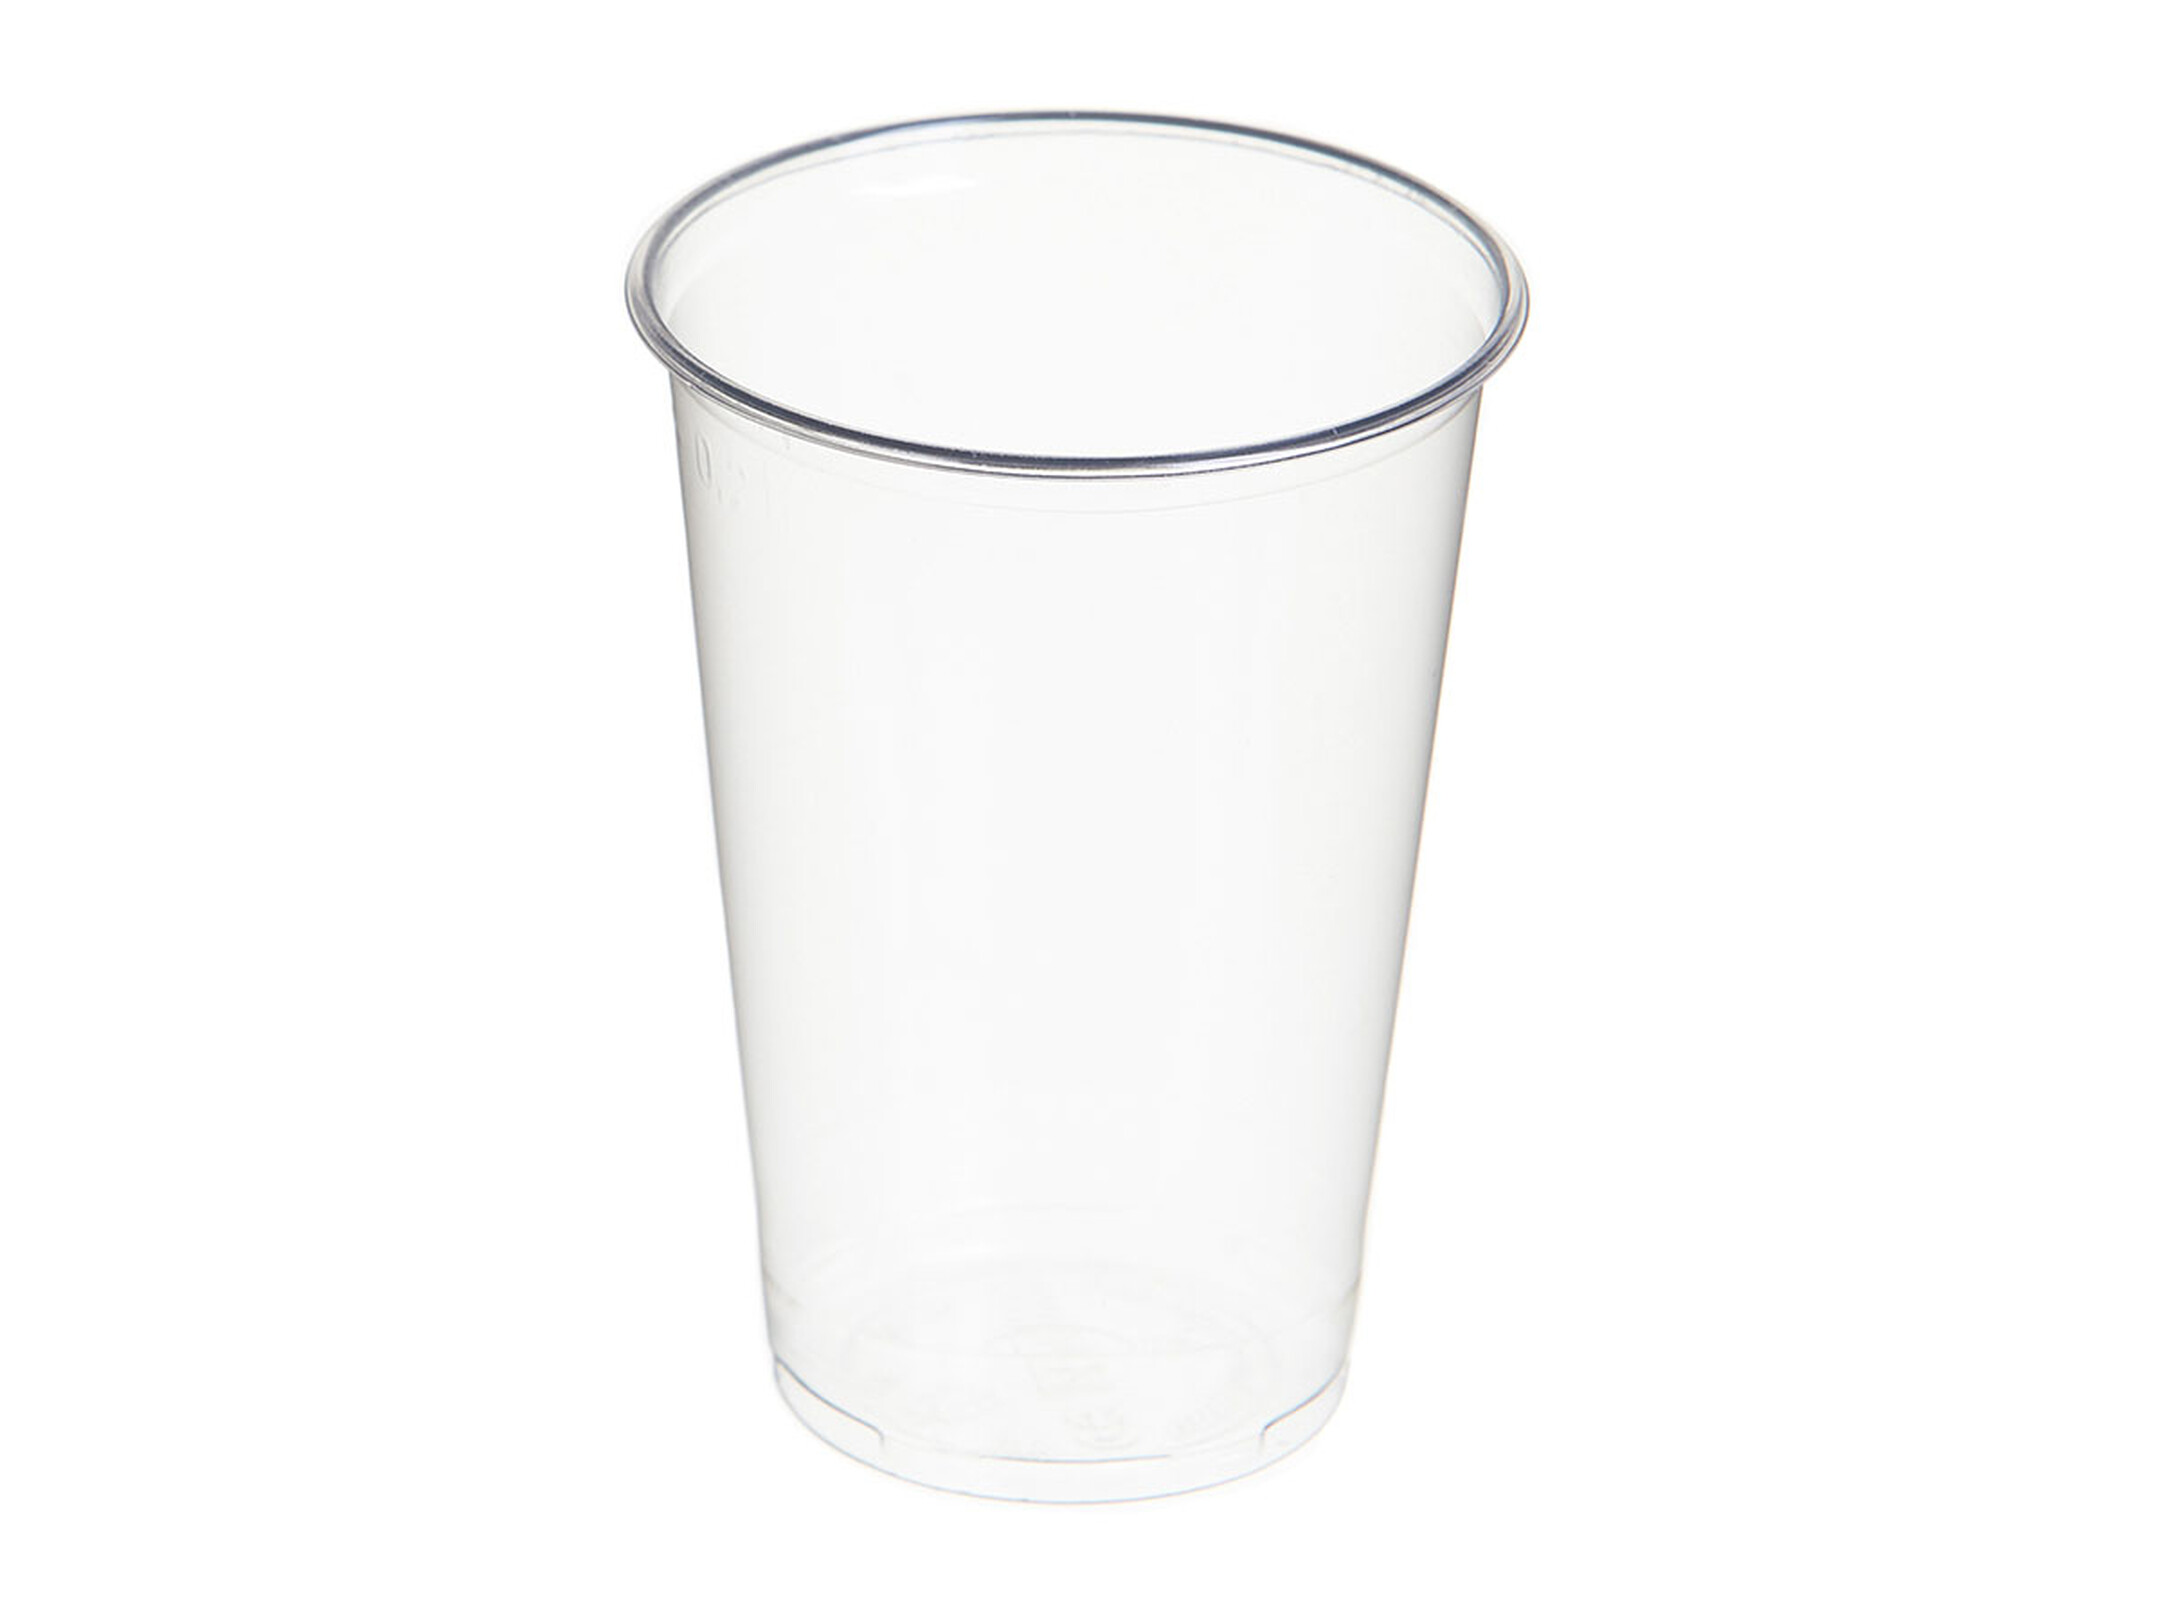 Gobelet jetable transparent pour boissons froides 200 ml compostable